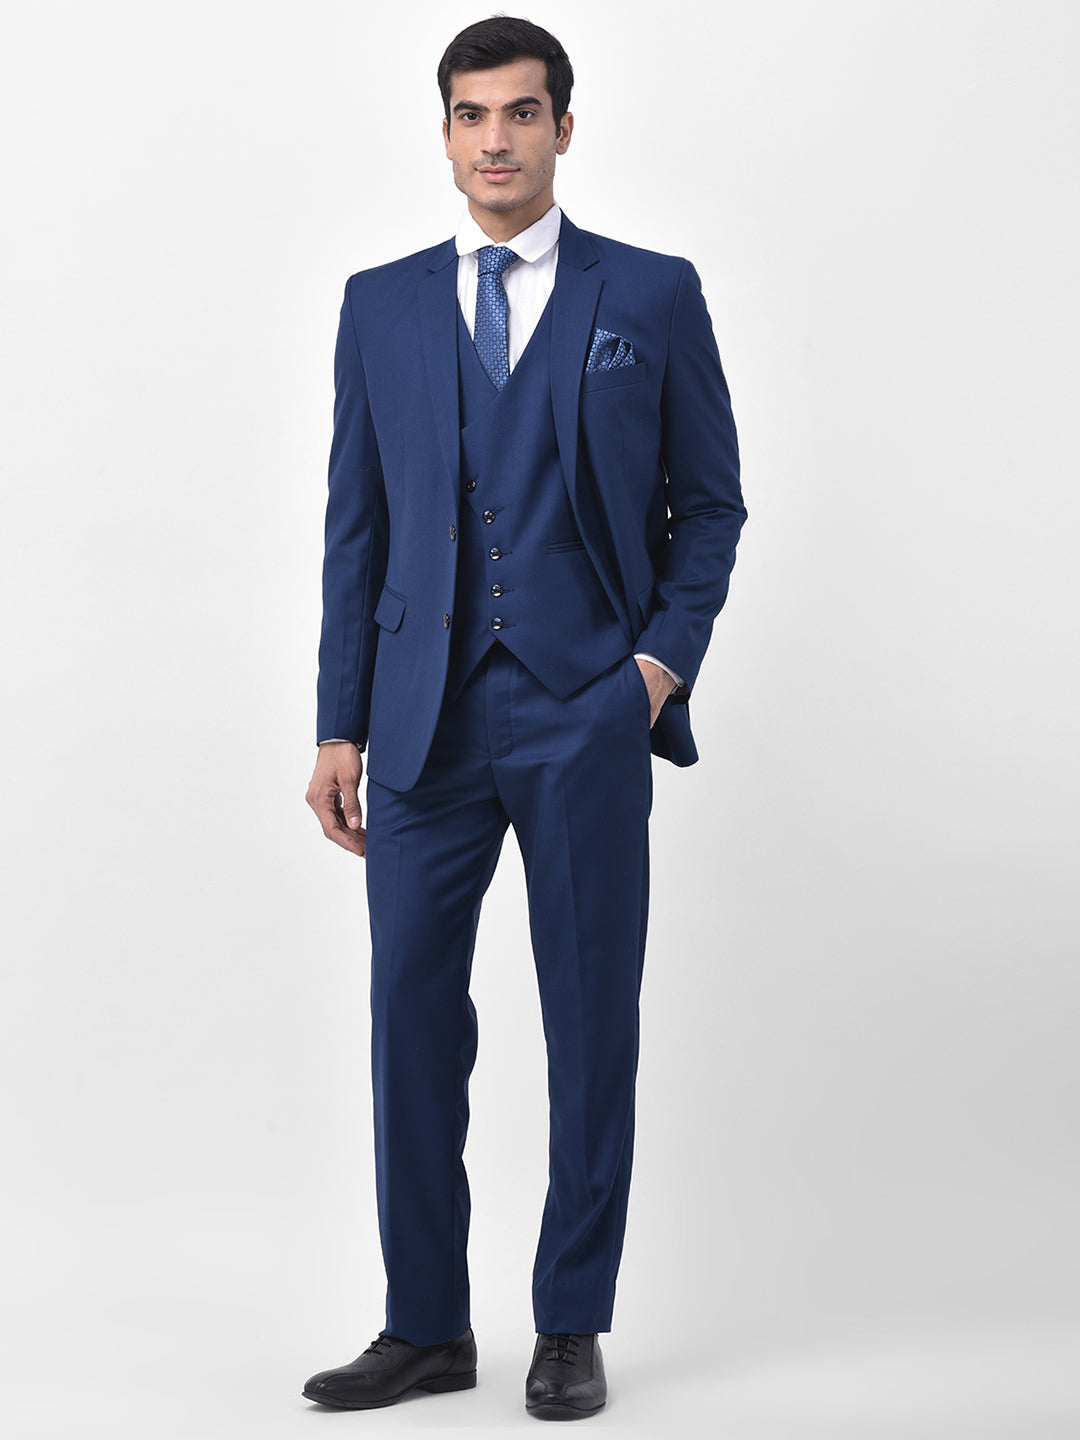 1PA1 Men's Slim Fit 2-Piece Suit Jacket & Pants Set Formal Wedding Prom  Business Suit,Green,L - Walmart.com